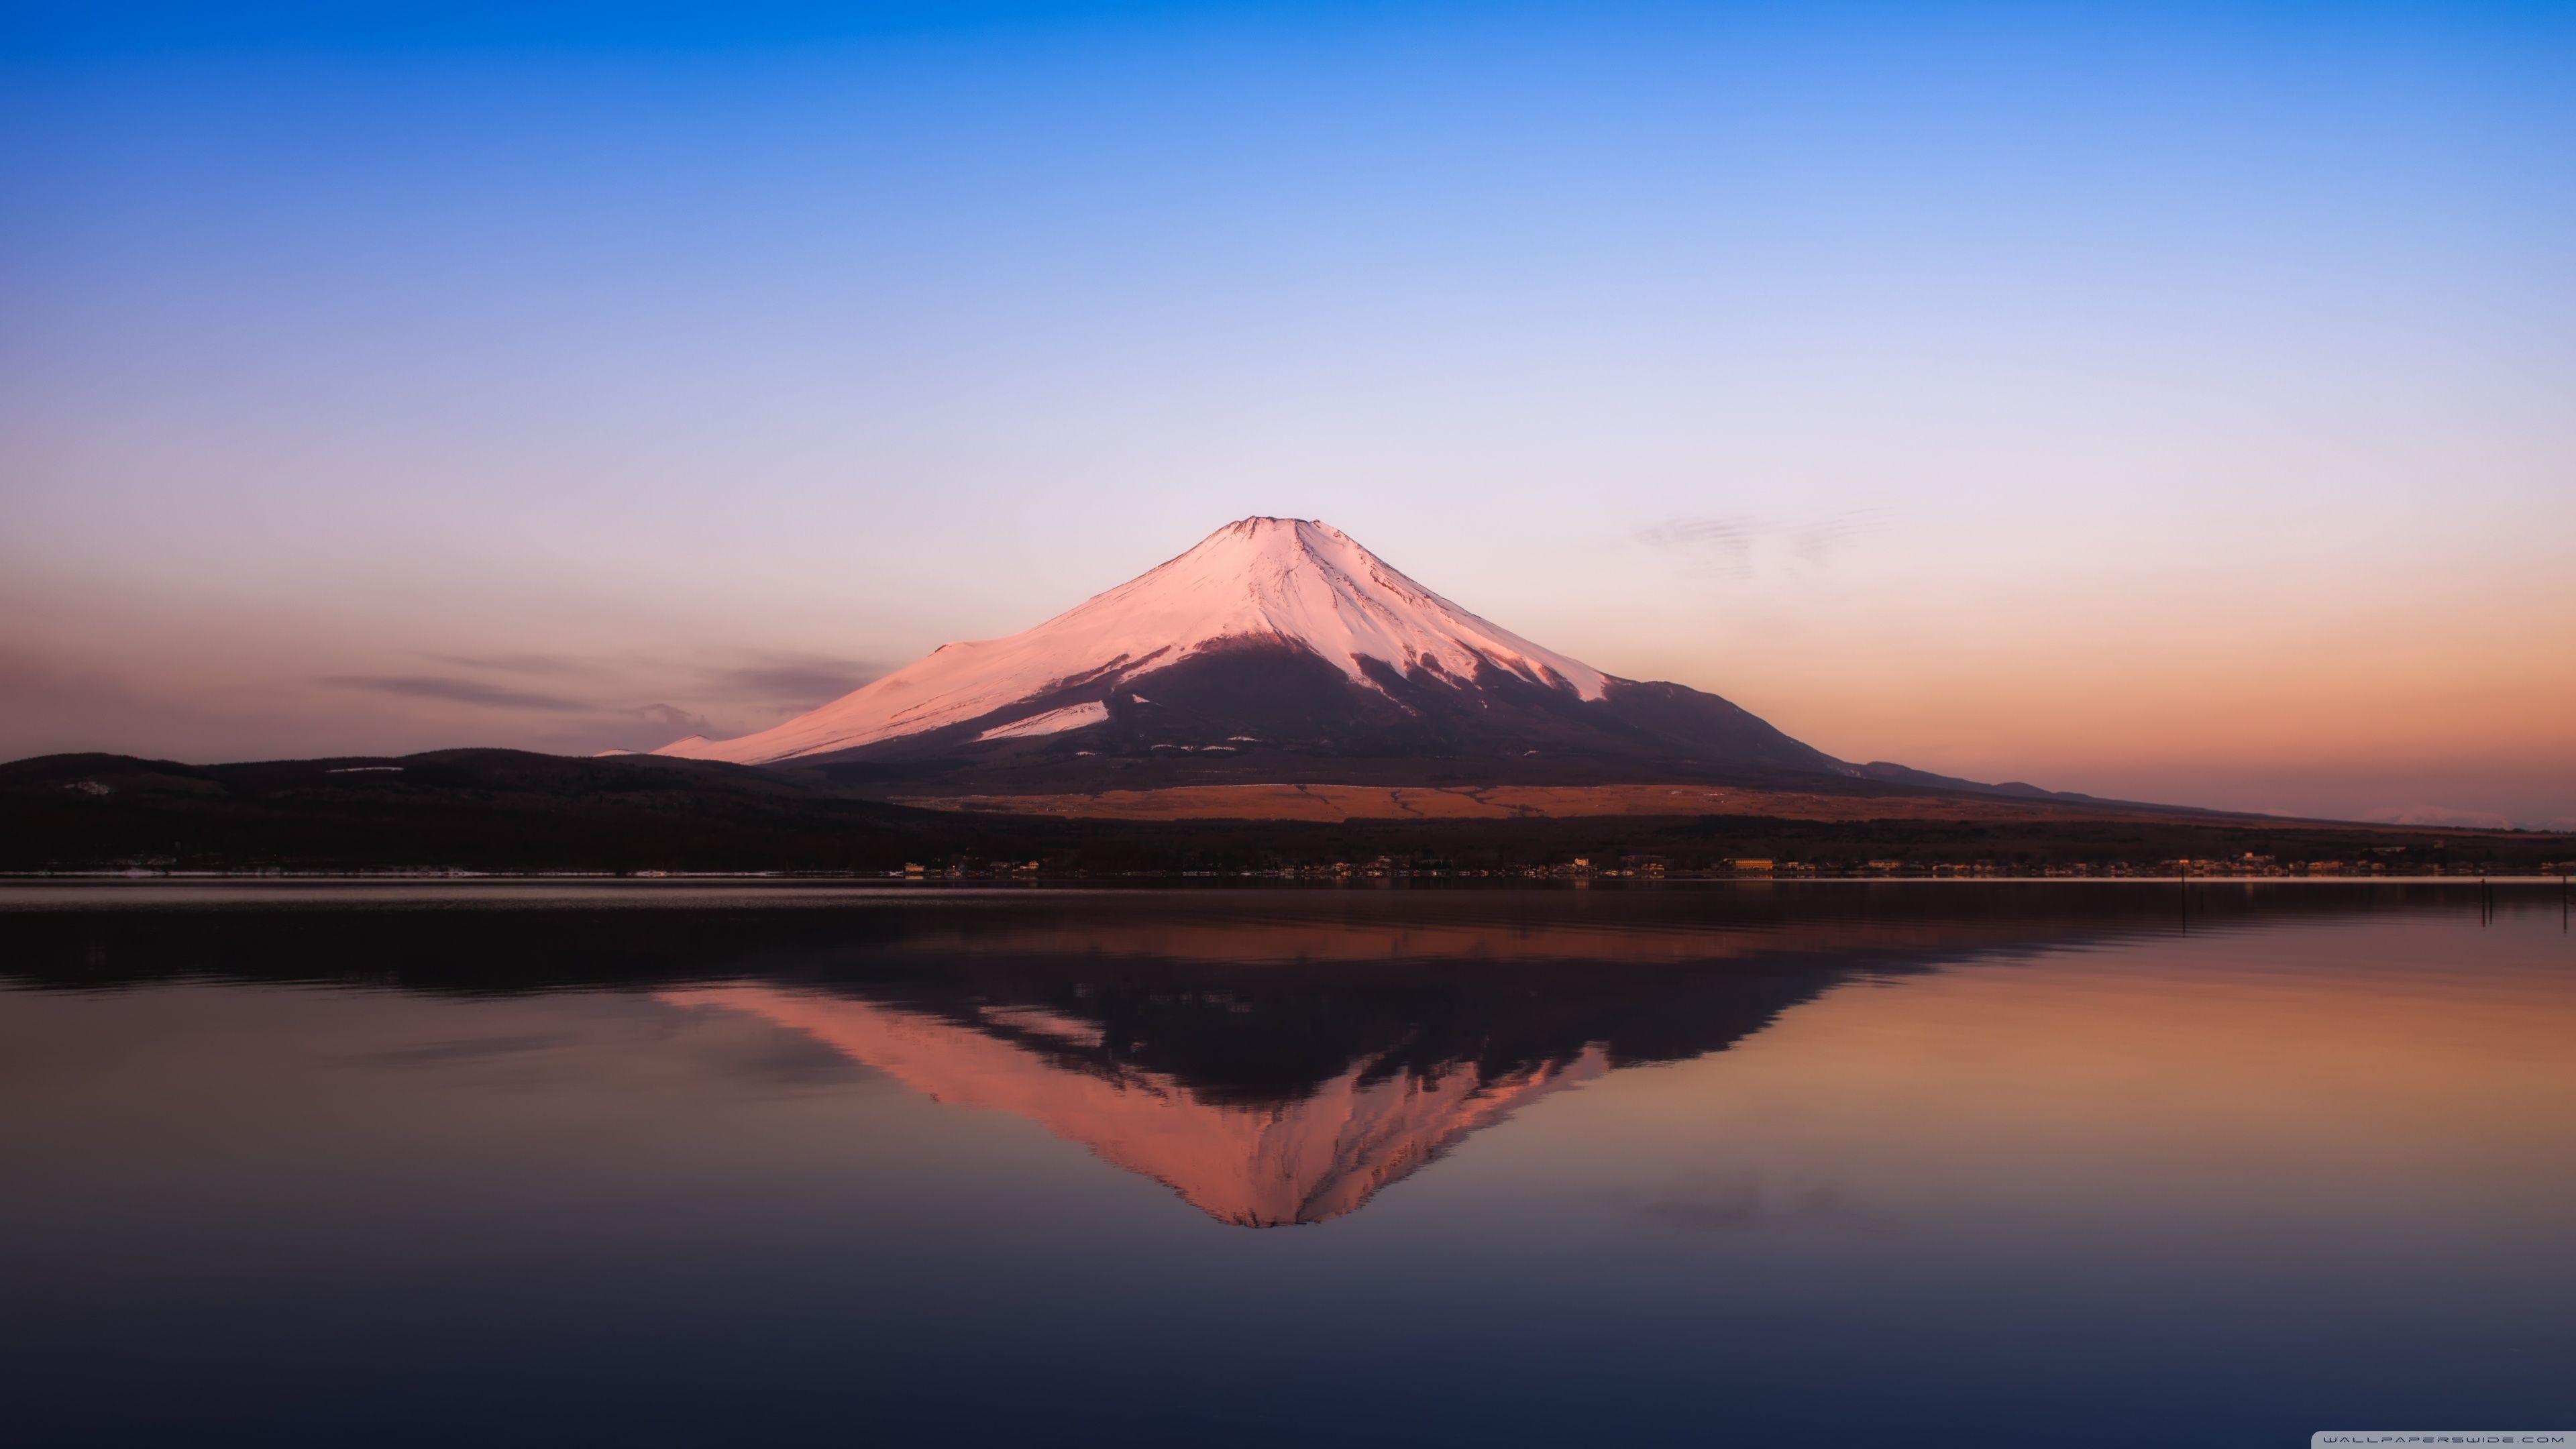 Mt. Fuji 4K Wallpaper Free Mt. Fuji 4K Background